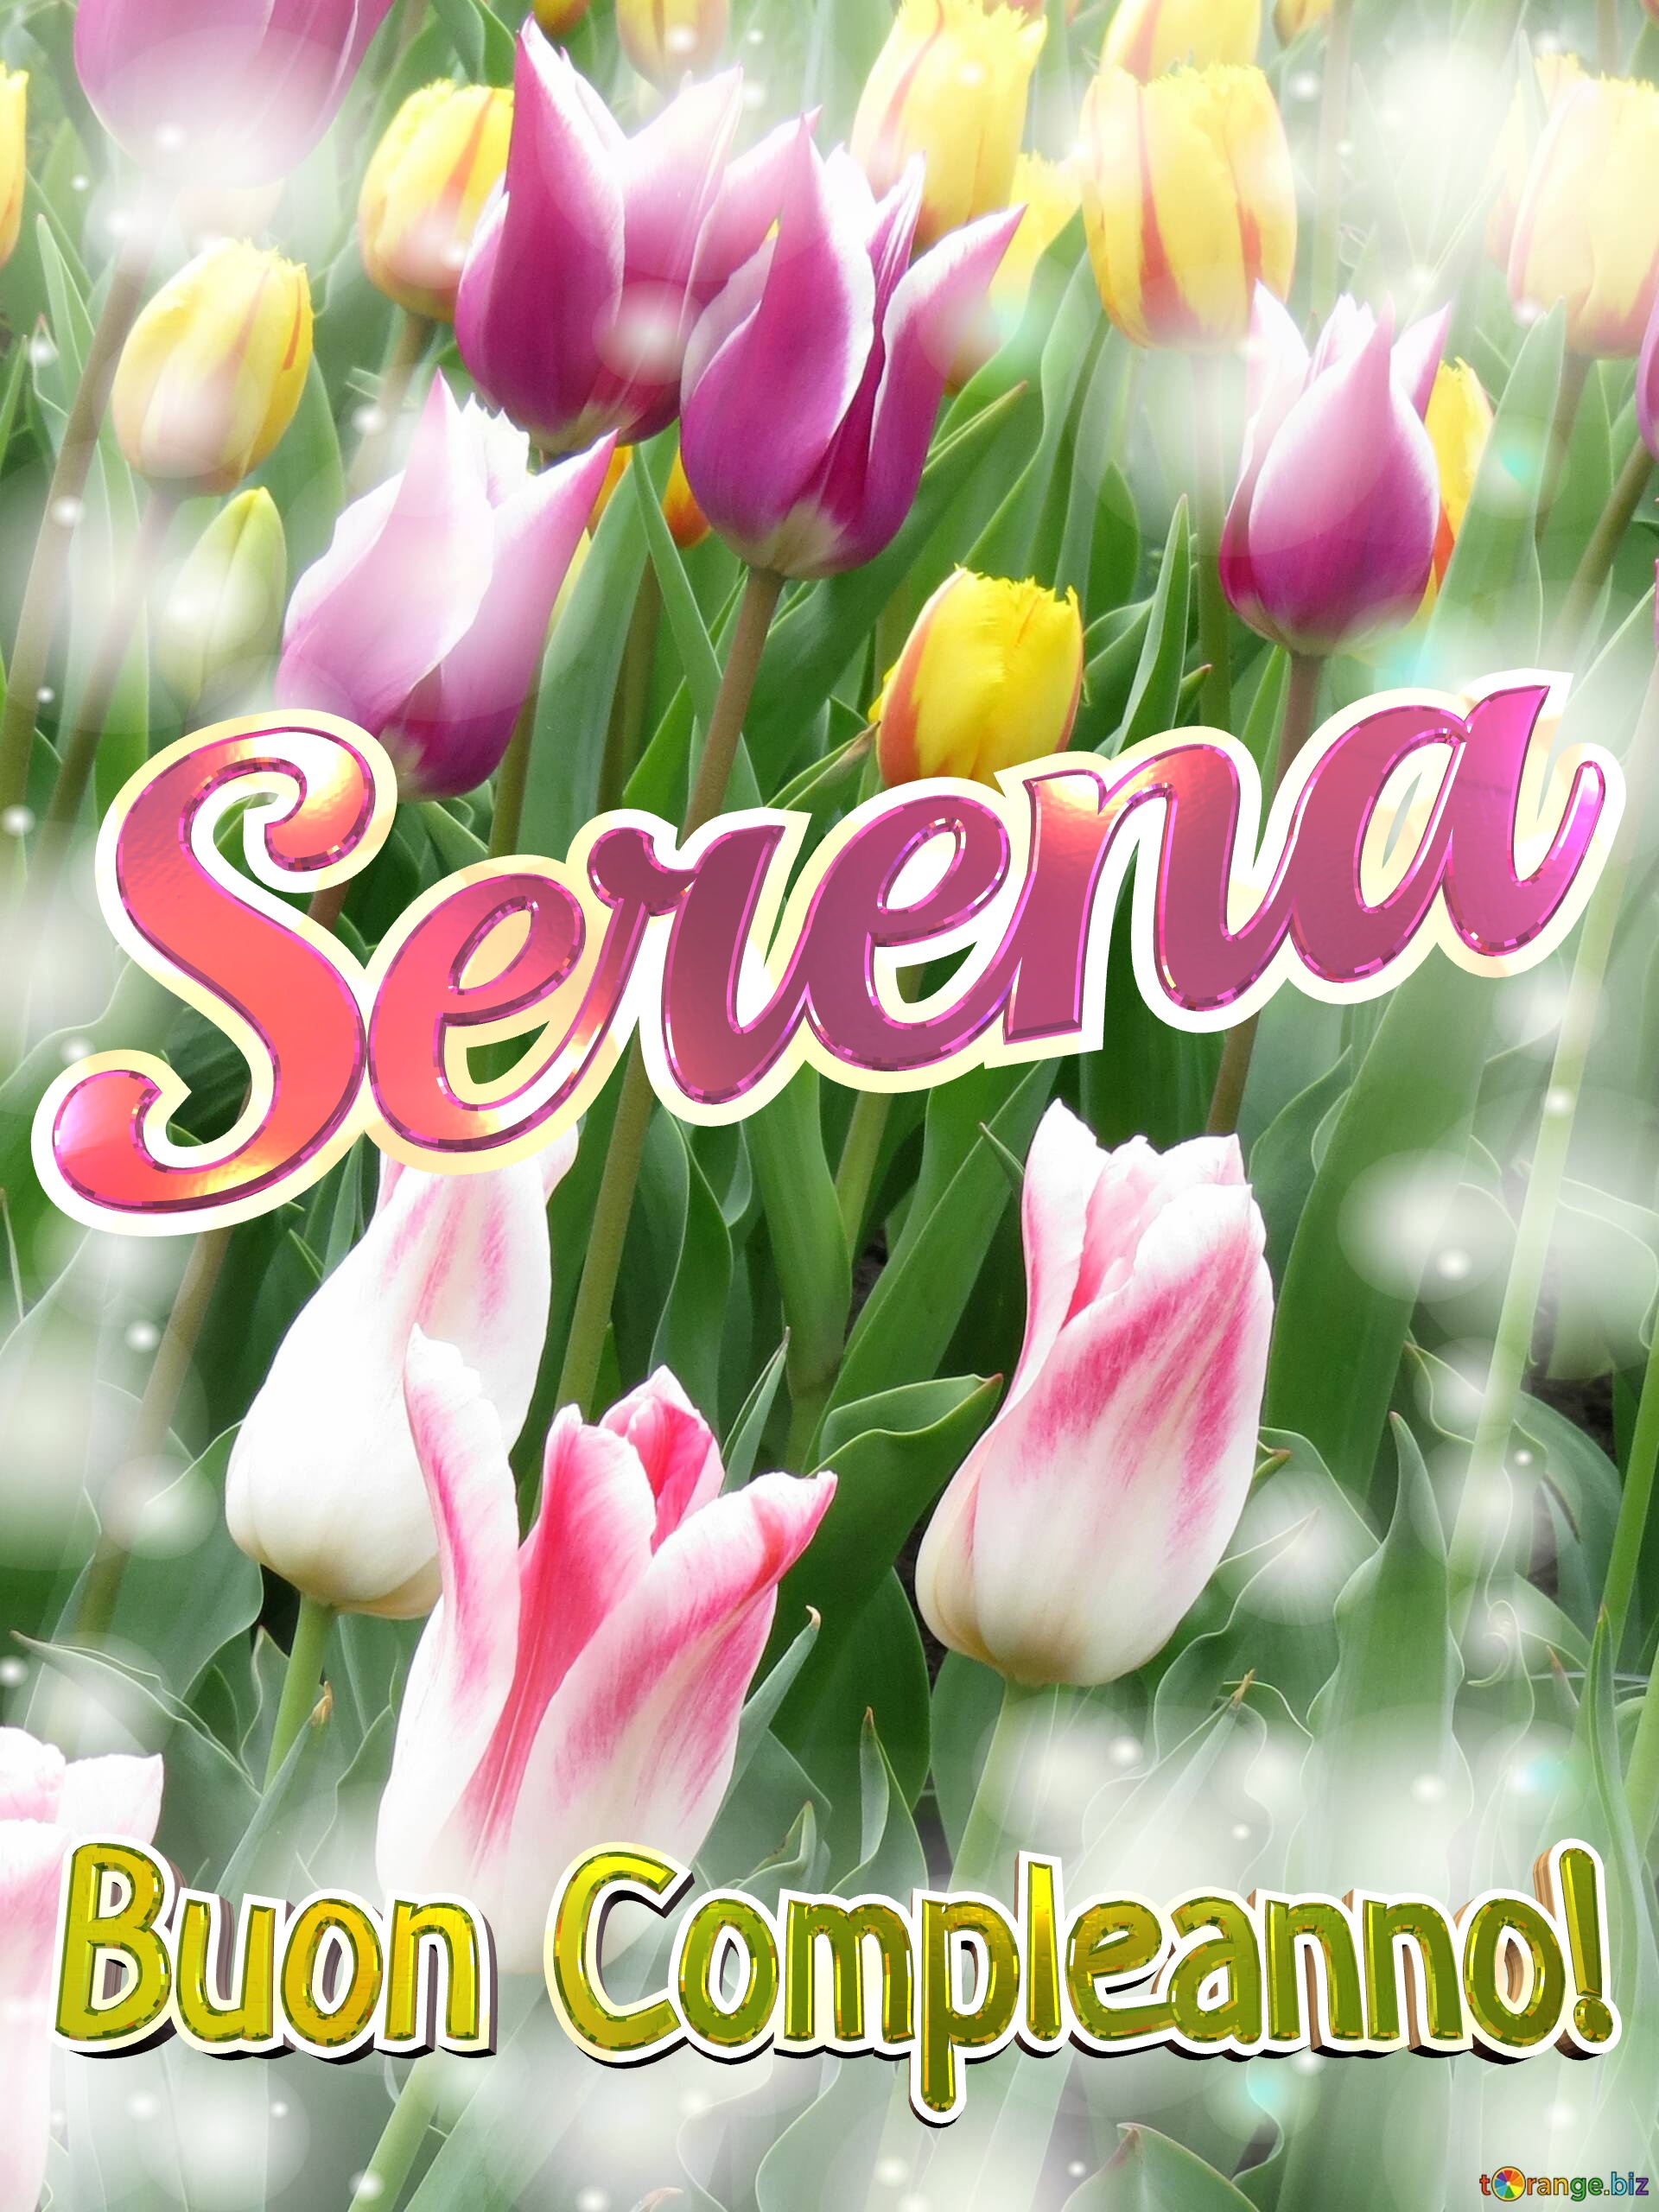 Buon Compleanno! Serena  La bellezza dei tulipani è un richiamo alla bellezza della vita, goditi ogni istante della tua vita. №0